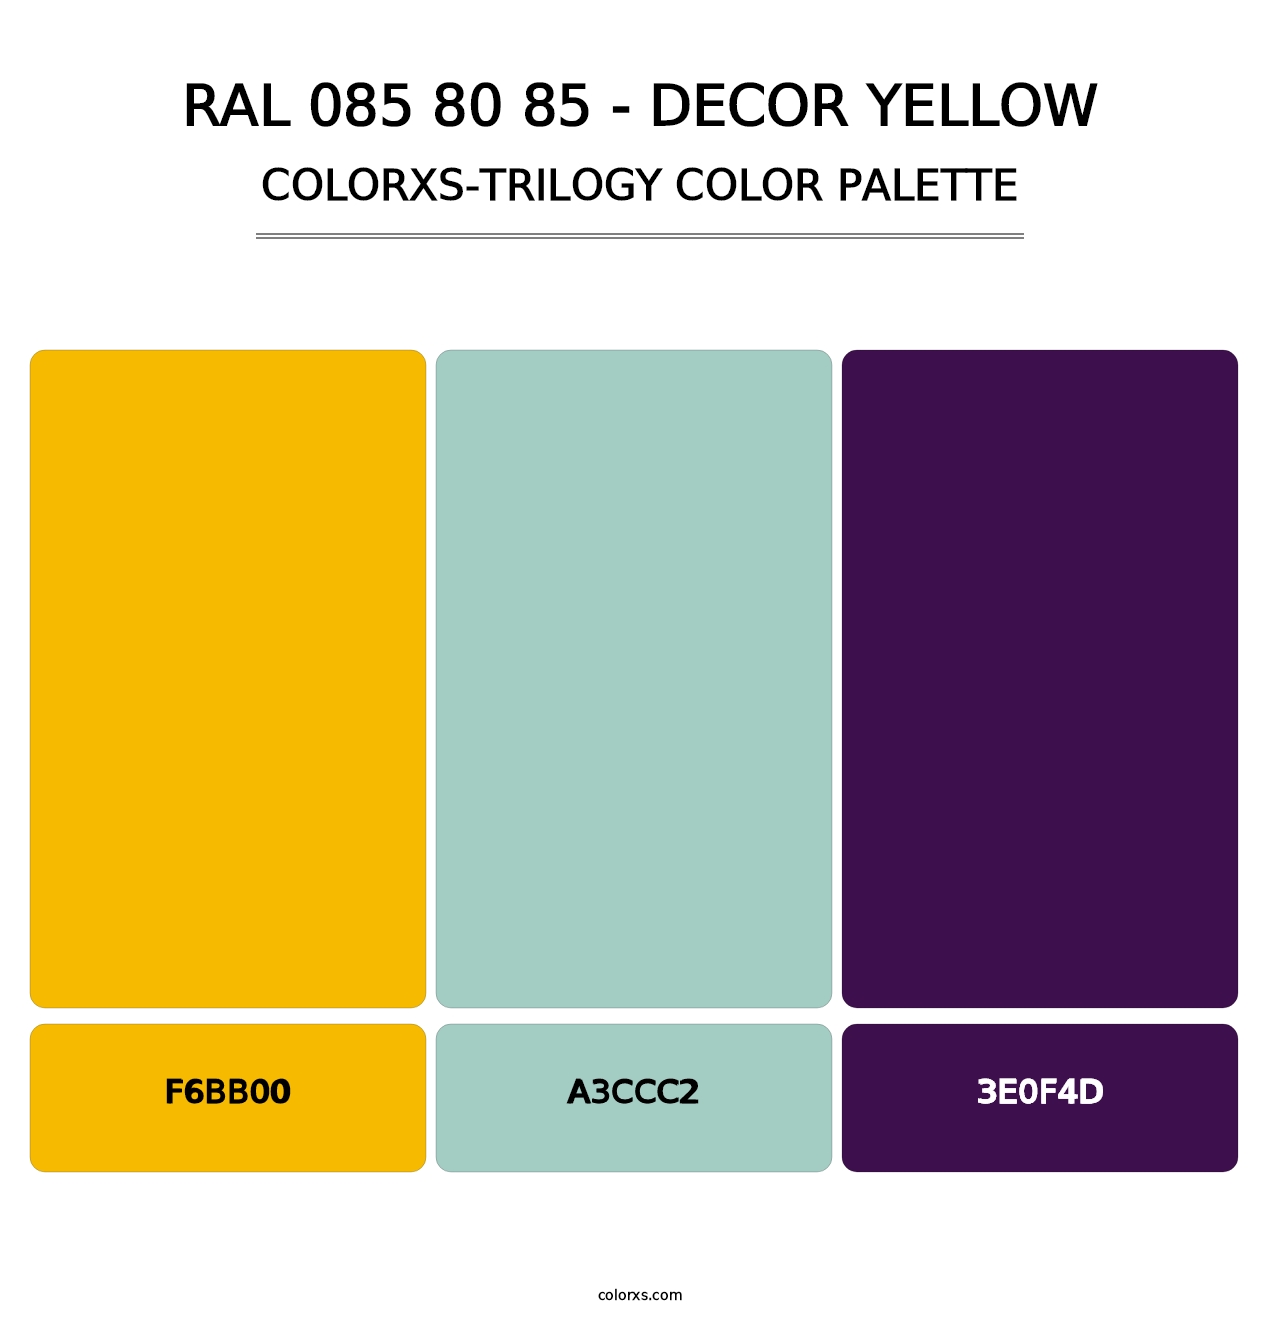 RAL 085 80 85 - Decor Yellow - Colorxs Trilogy Palette